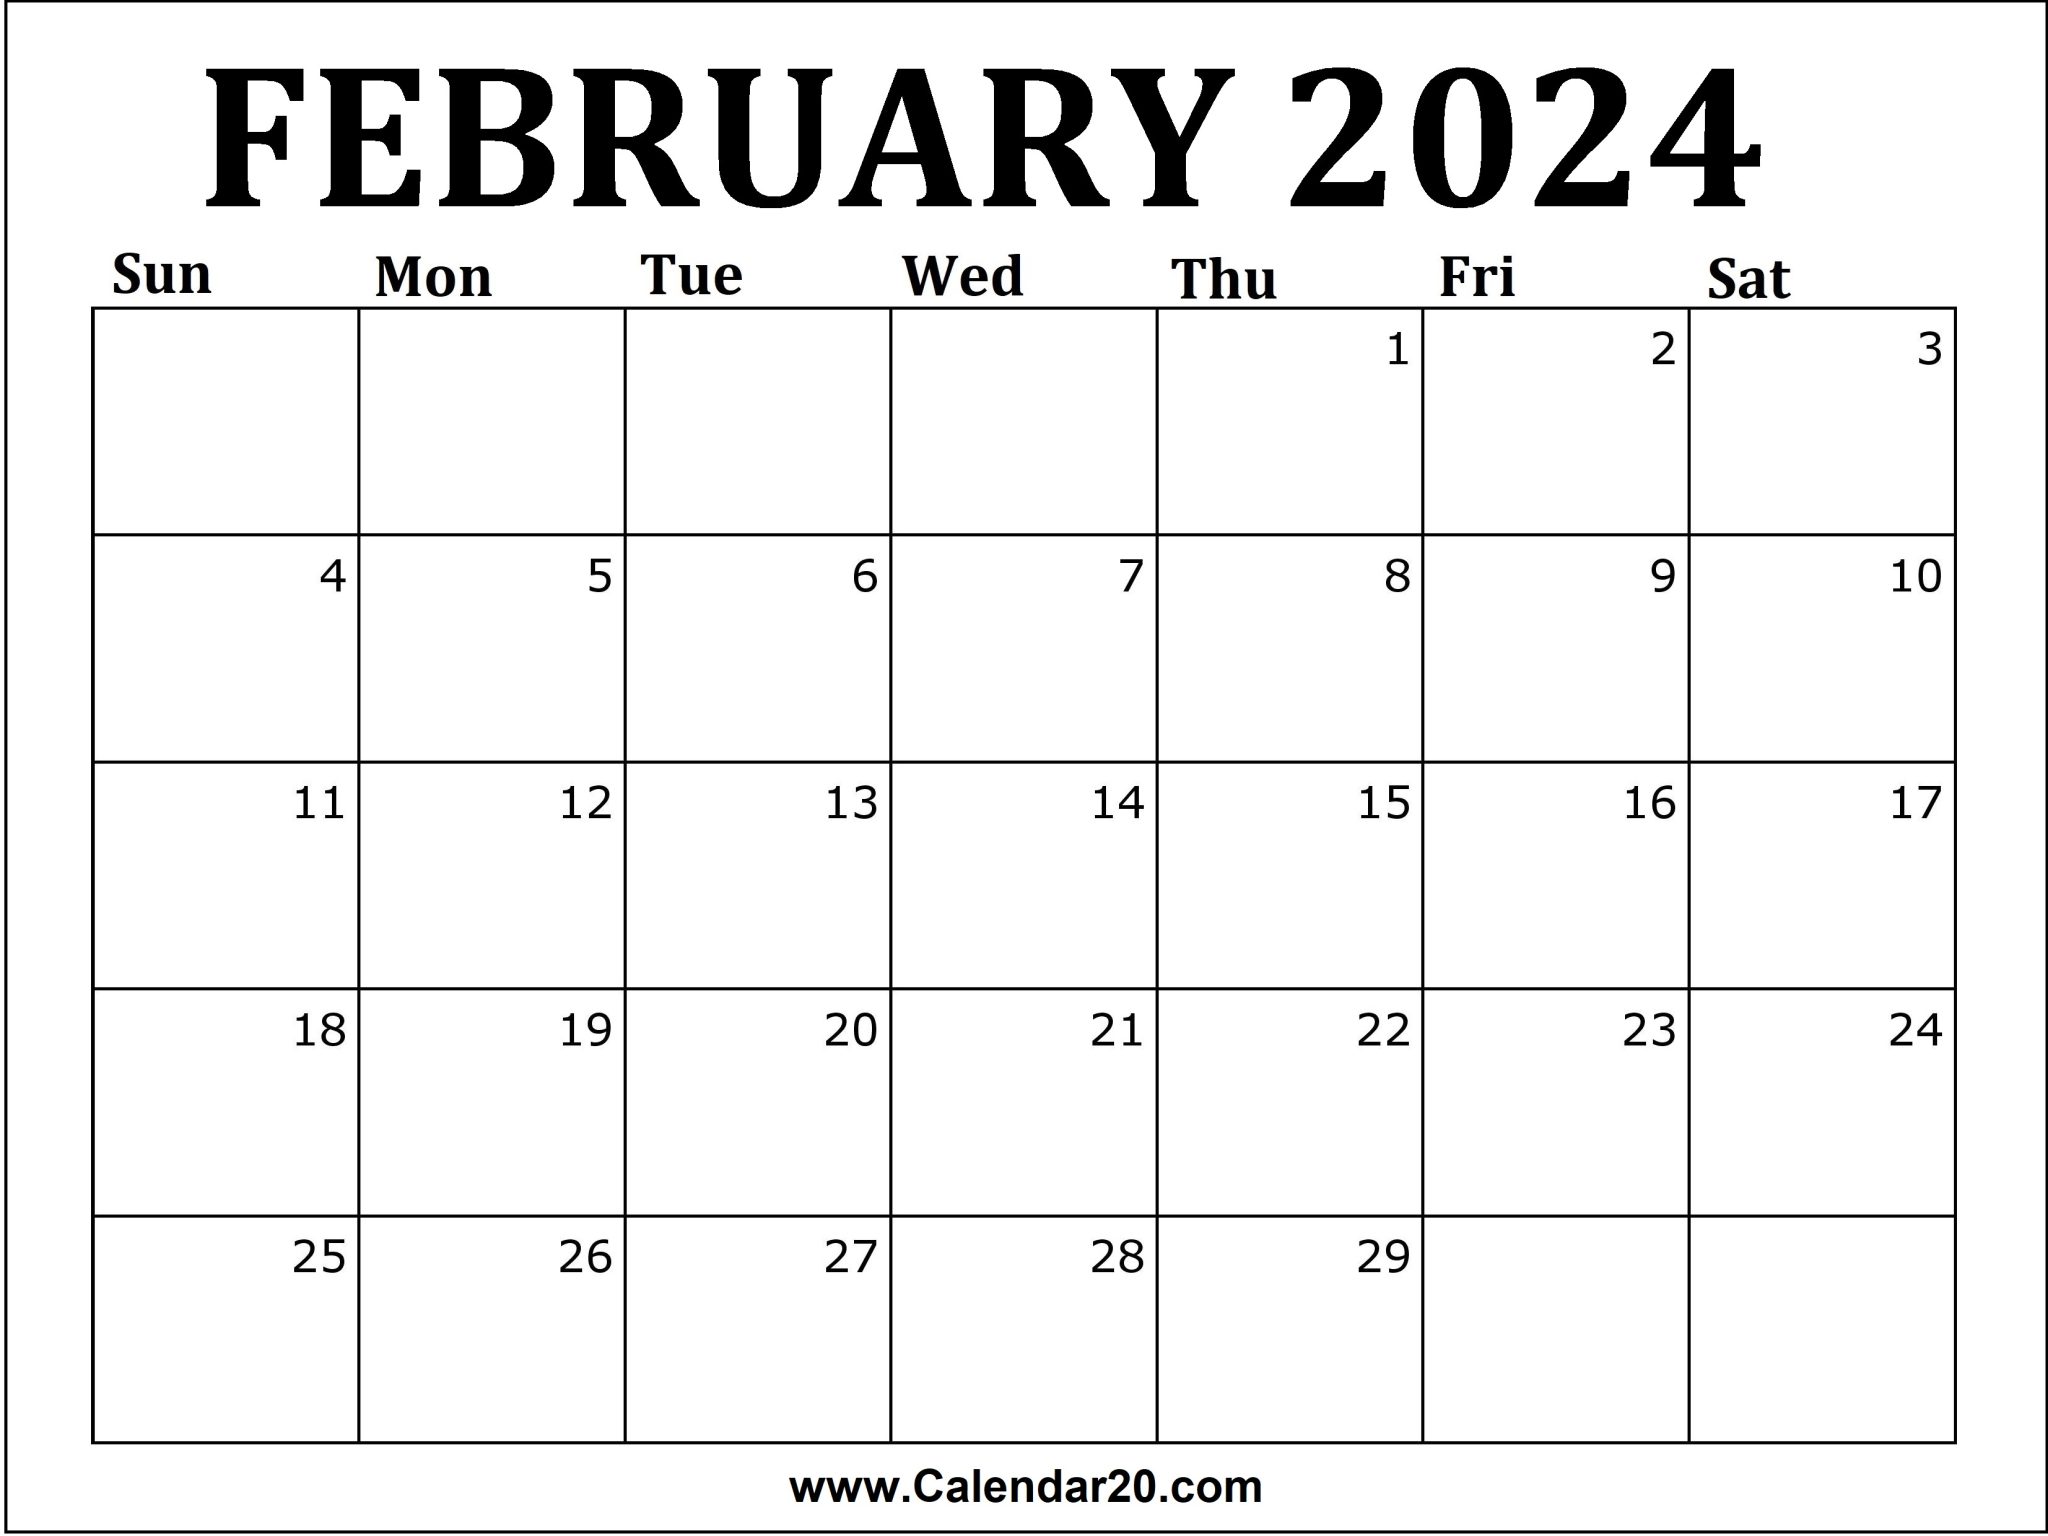 february-2024-calendar-printable-calendar20